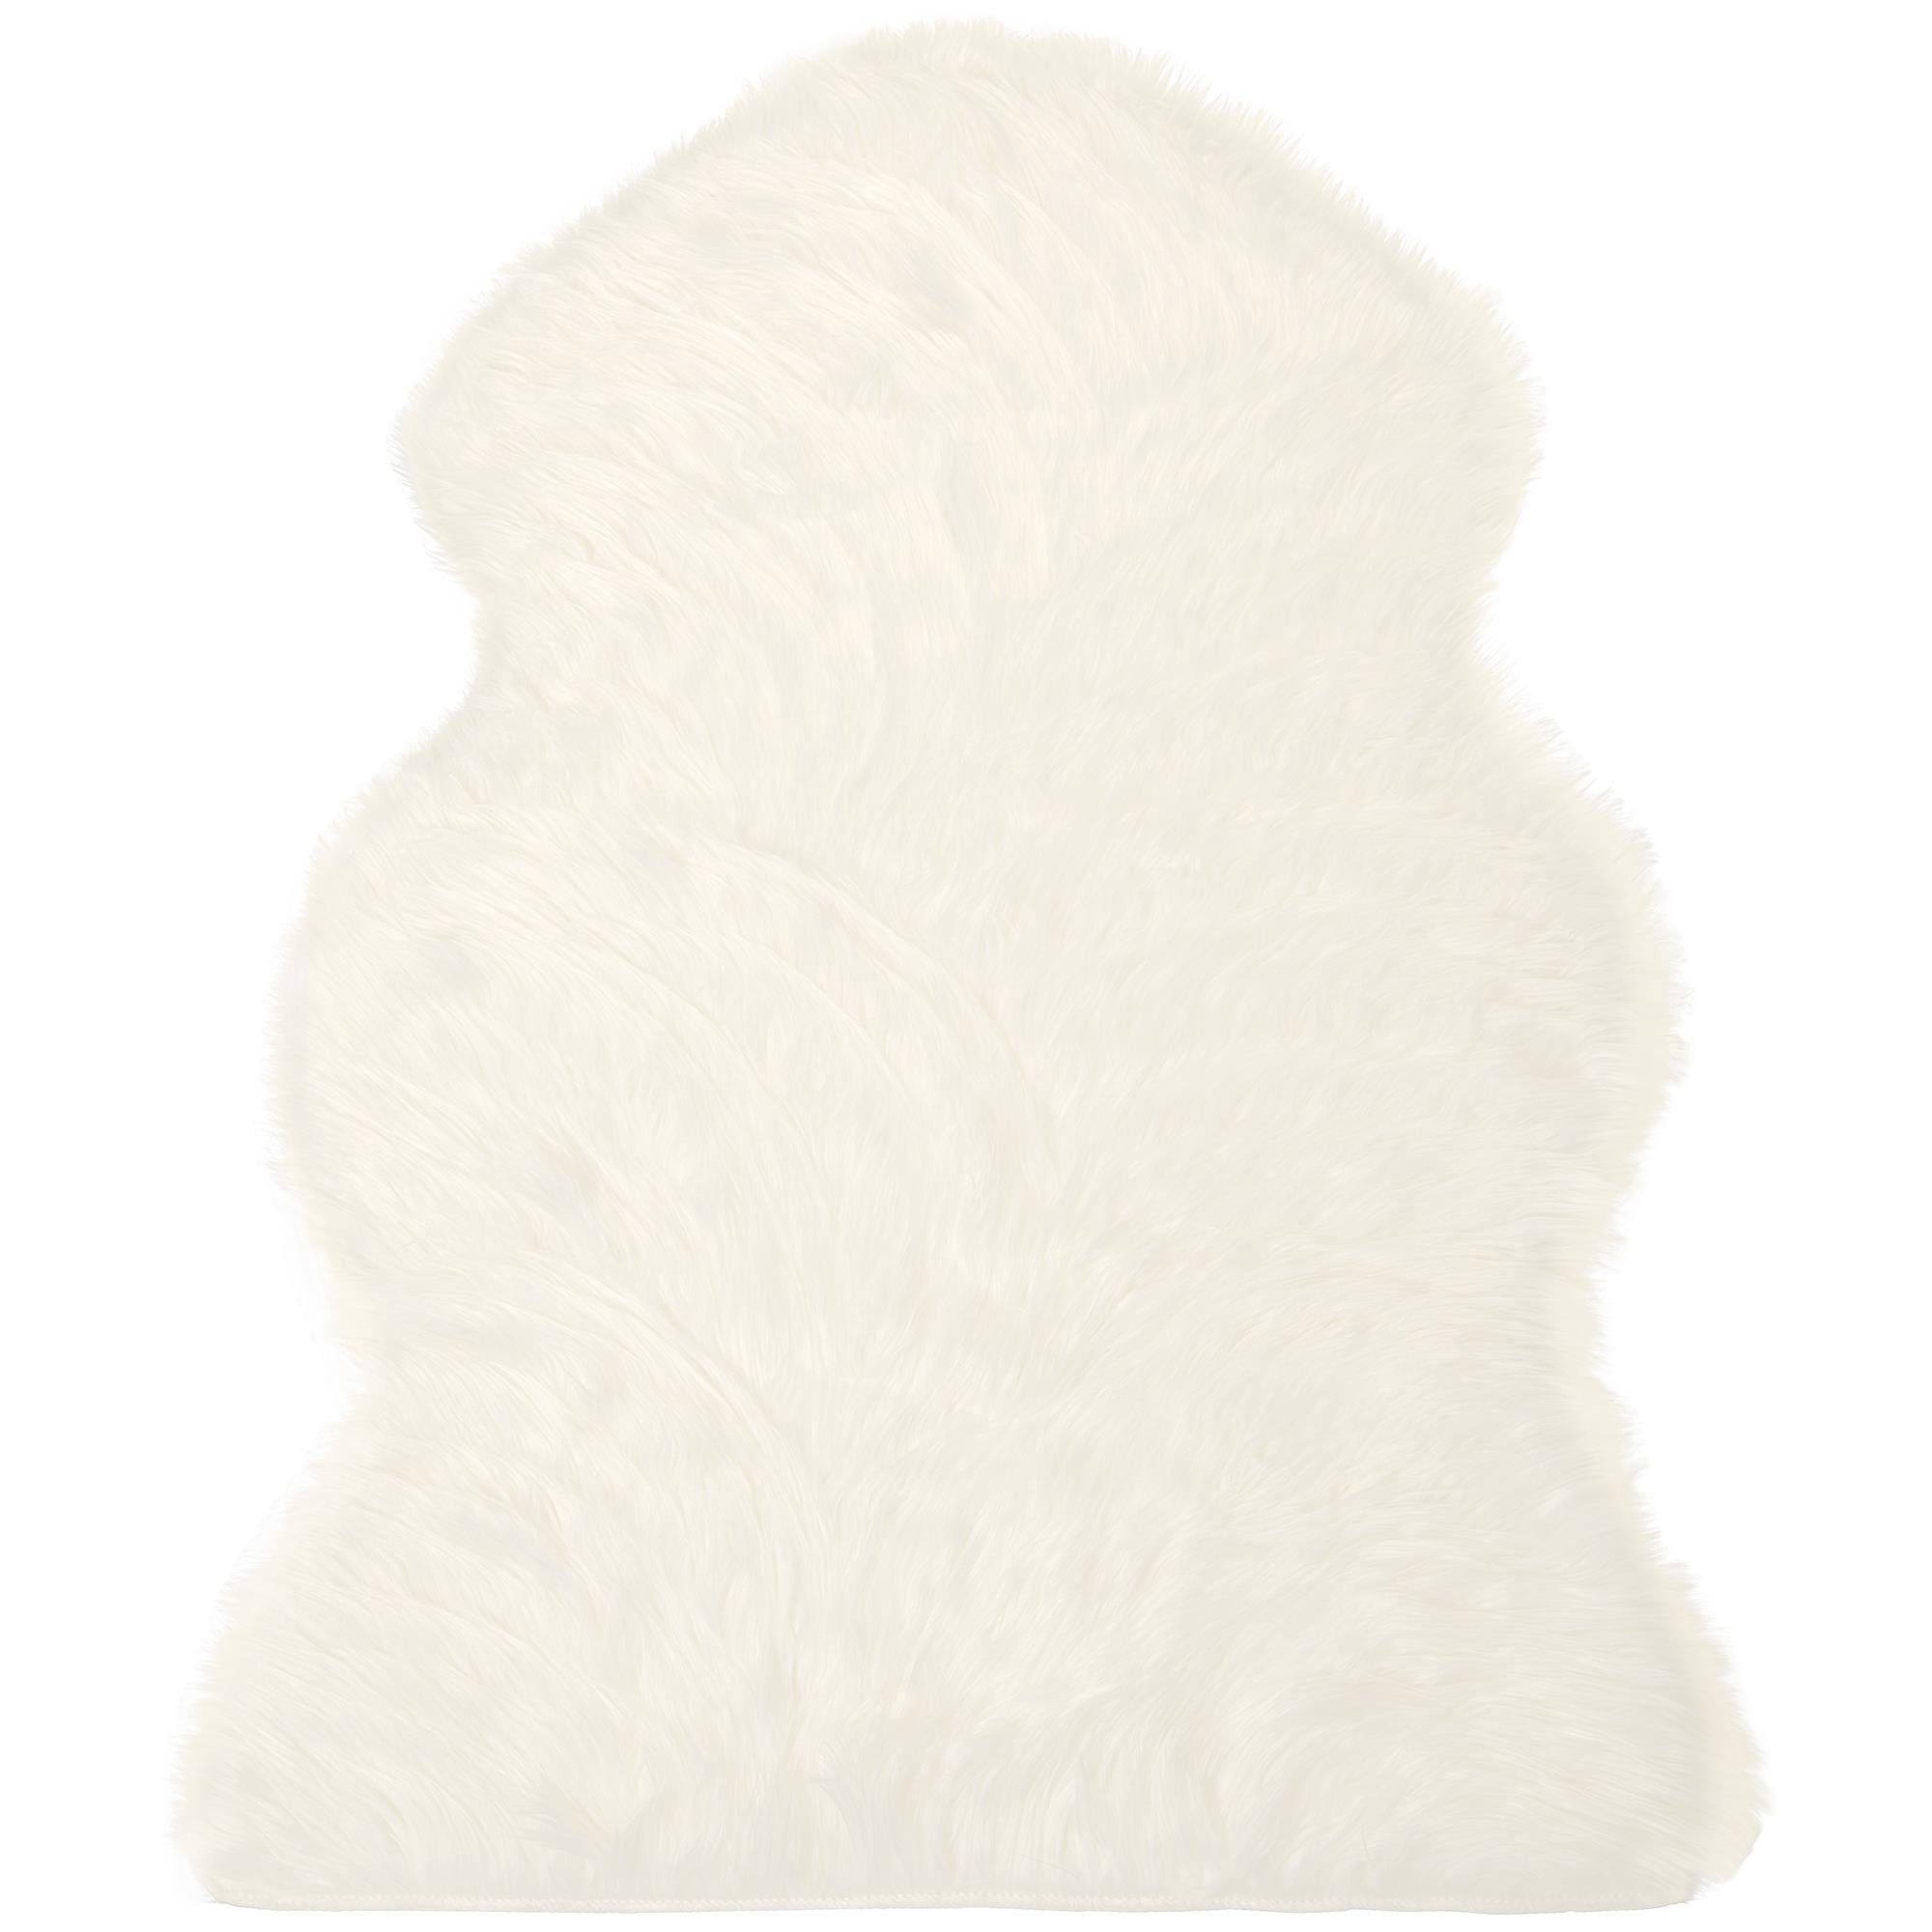 CelinaTex Dekokissen Furry Läufer Teppich Bettvorleger Langhaar 60x90cm weiß, flauschig,kuschelweich,weich,Wohnraumdekoration,Handwäsche,dekorativ